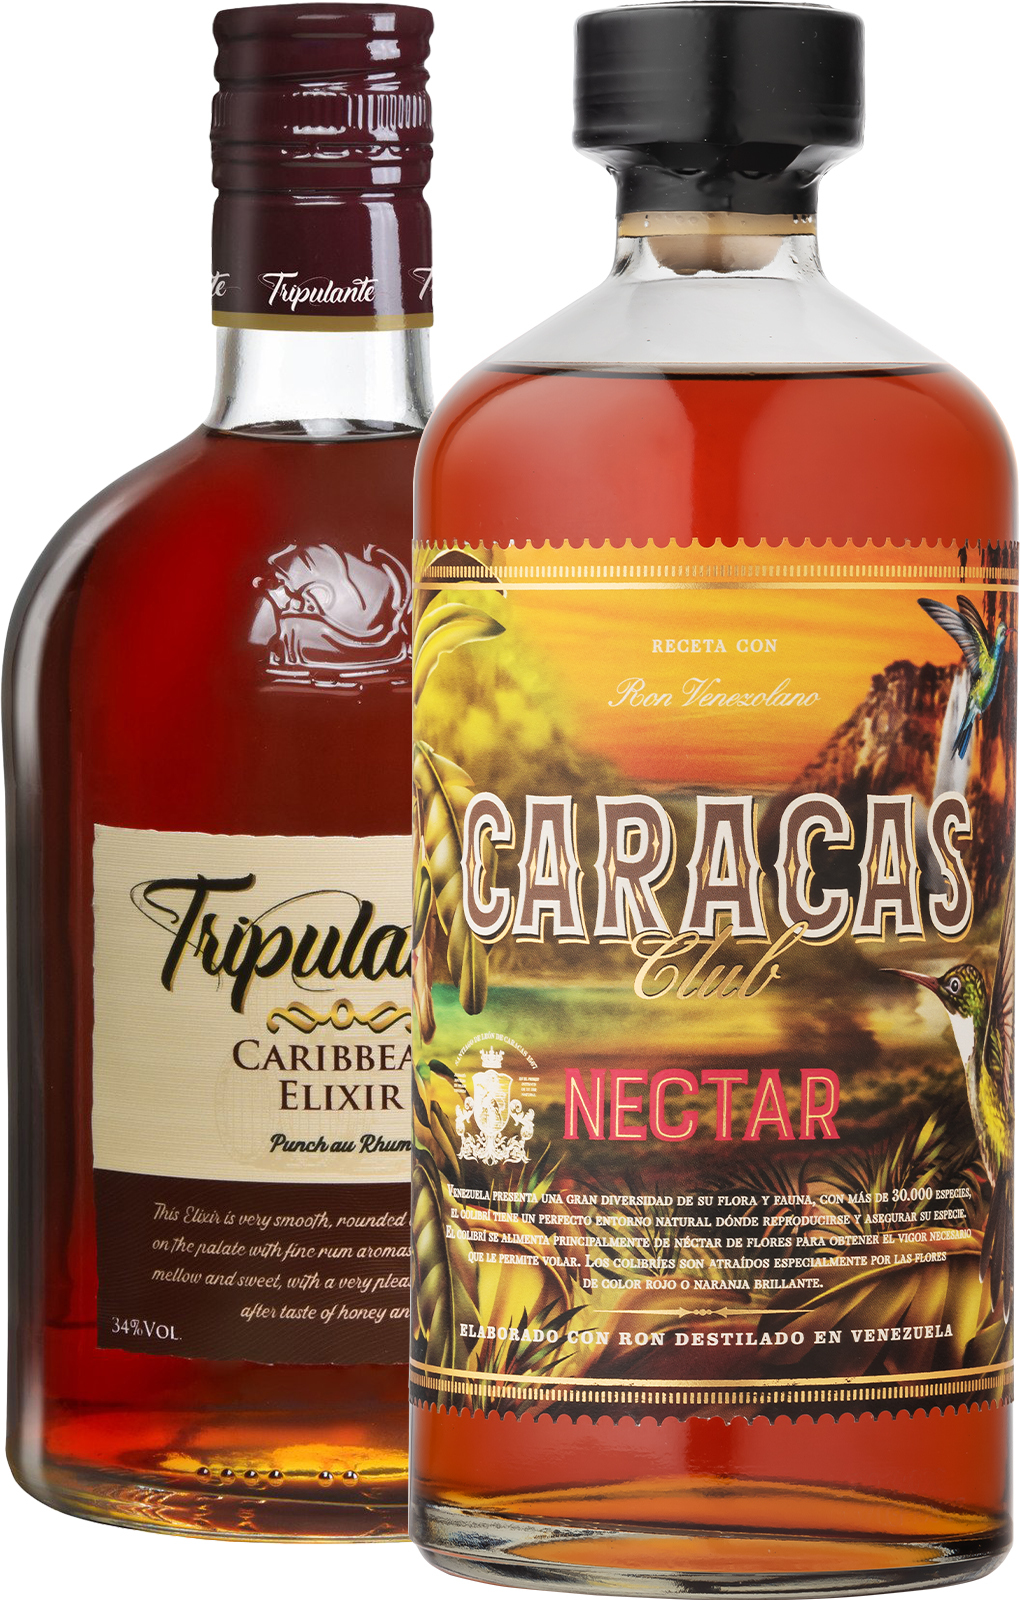 Set Caracas Club Nectar + Tripulante Caribbean Elixir (set 1 x 0.7 l, 1 x 0.7 l)